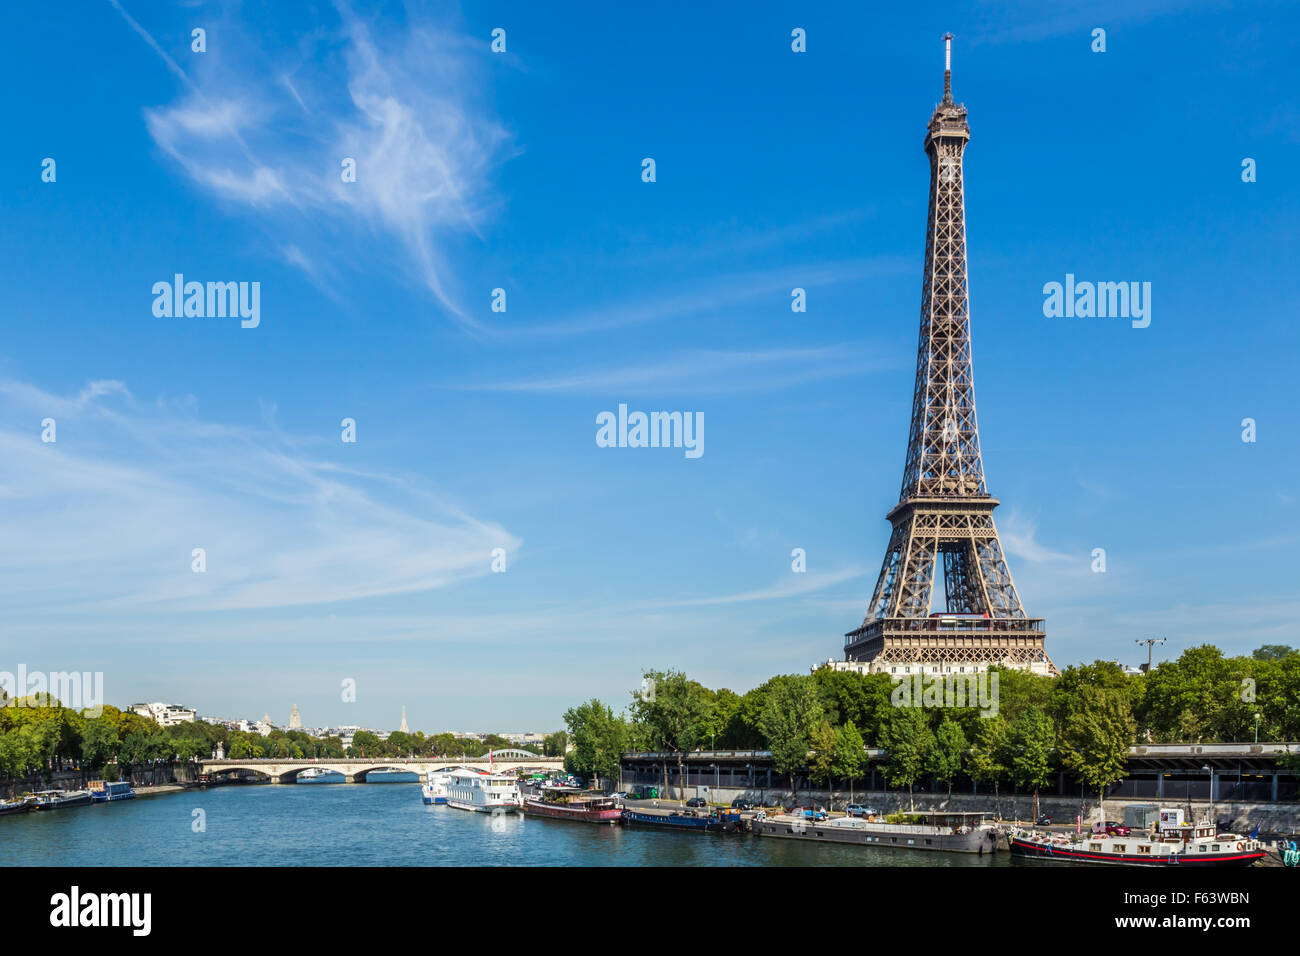 La Tour Eiffel contre un ciel bleu, avec des nuages filandreux. Au premier plan sont des bateaux sur la Seine. Banque D'Images